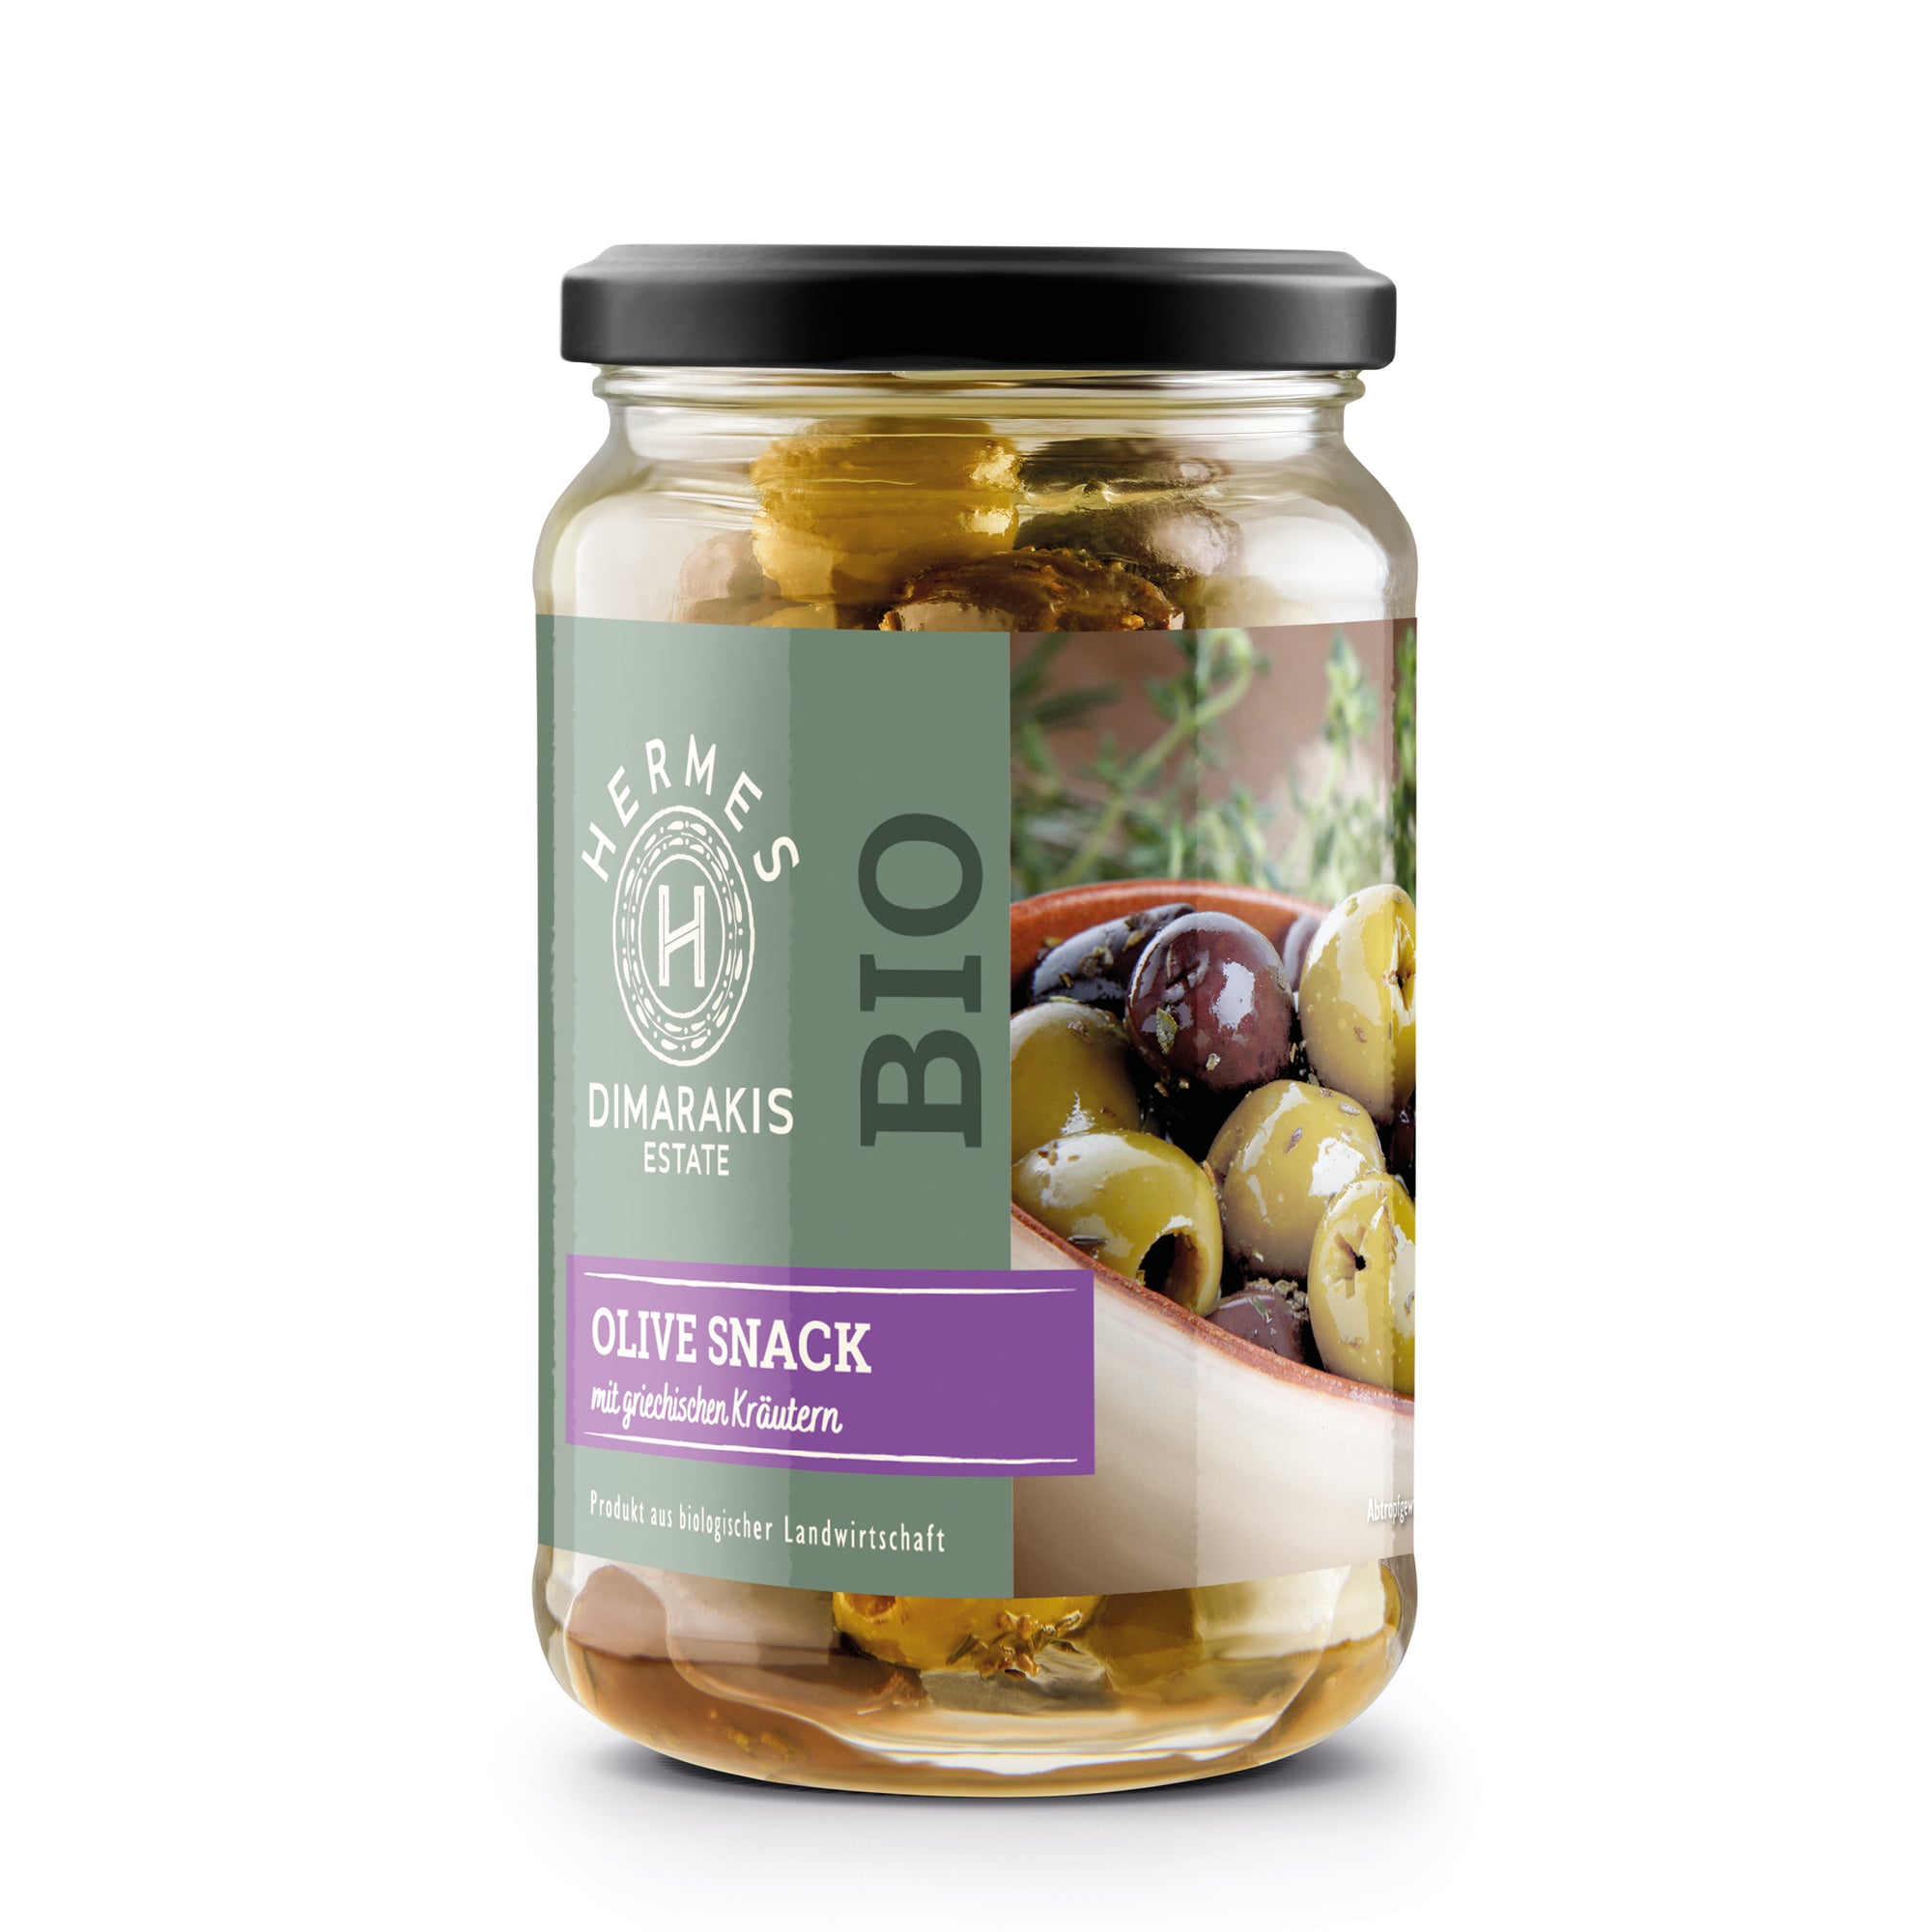 BIO Oliven Snack mit griechischen Kräutern - HERMES BIO